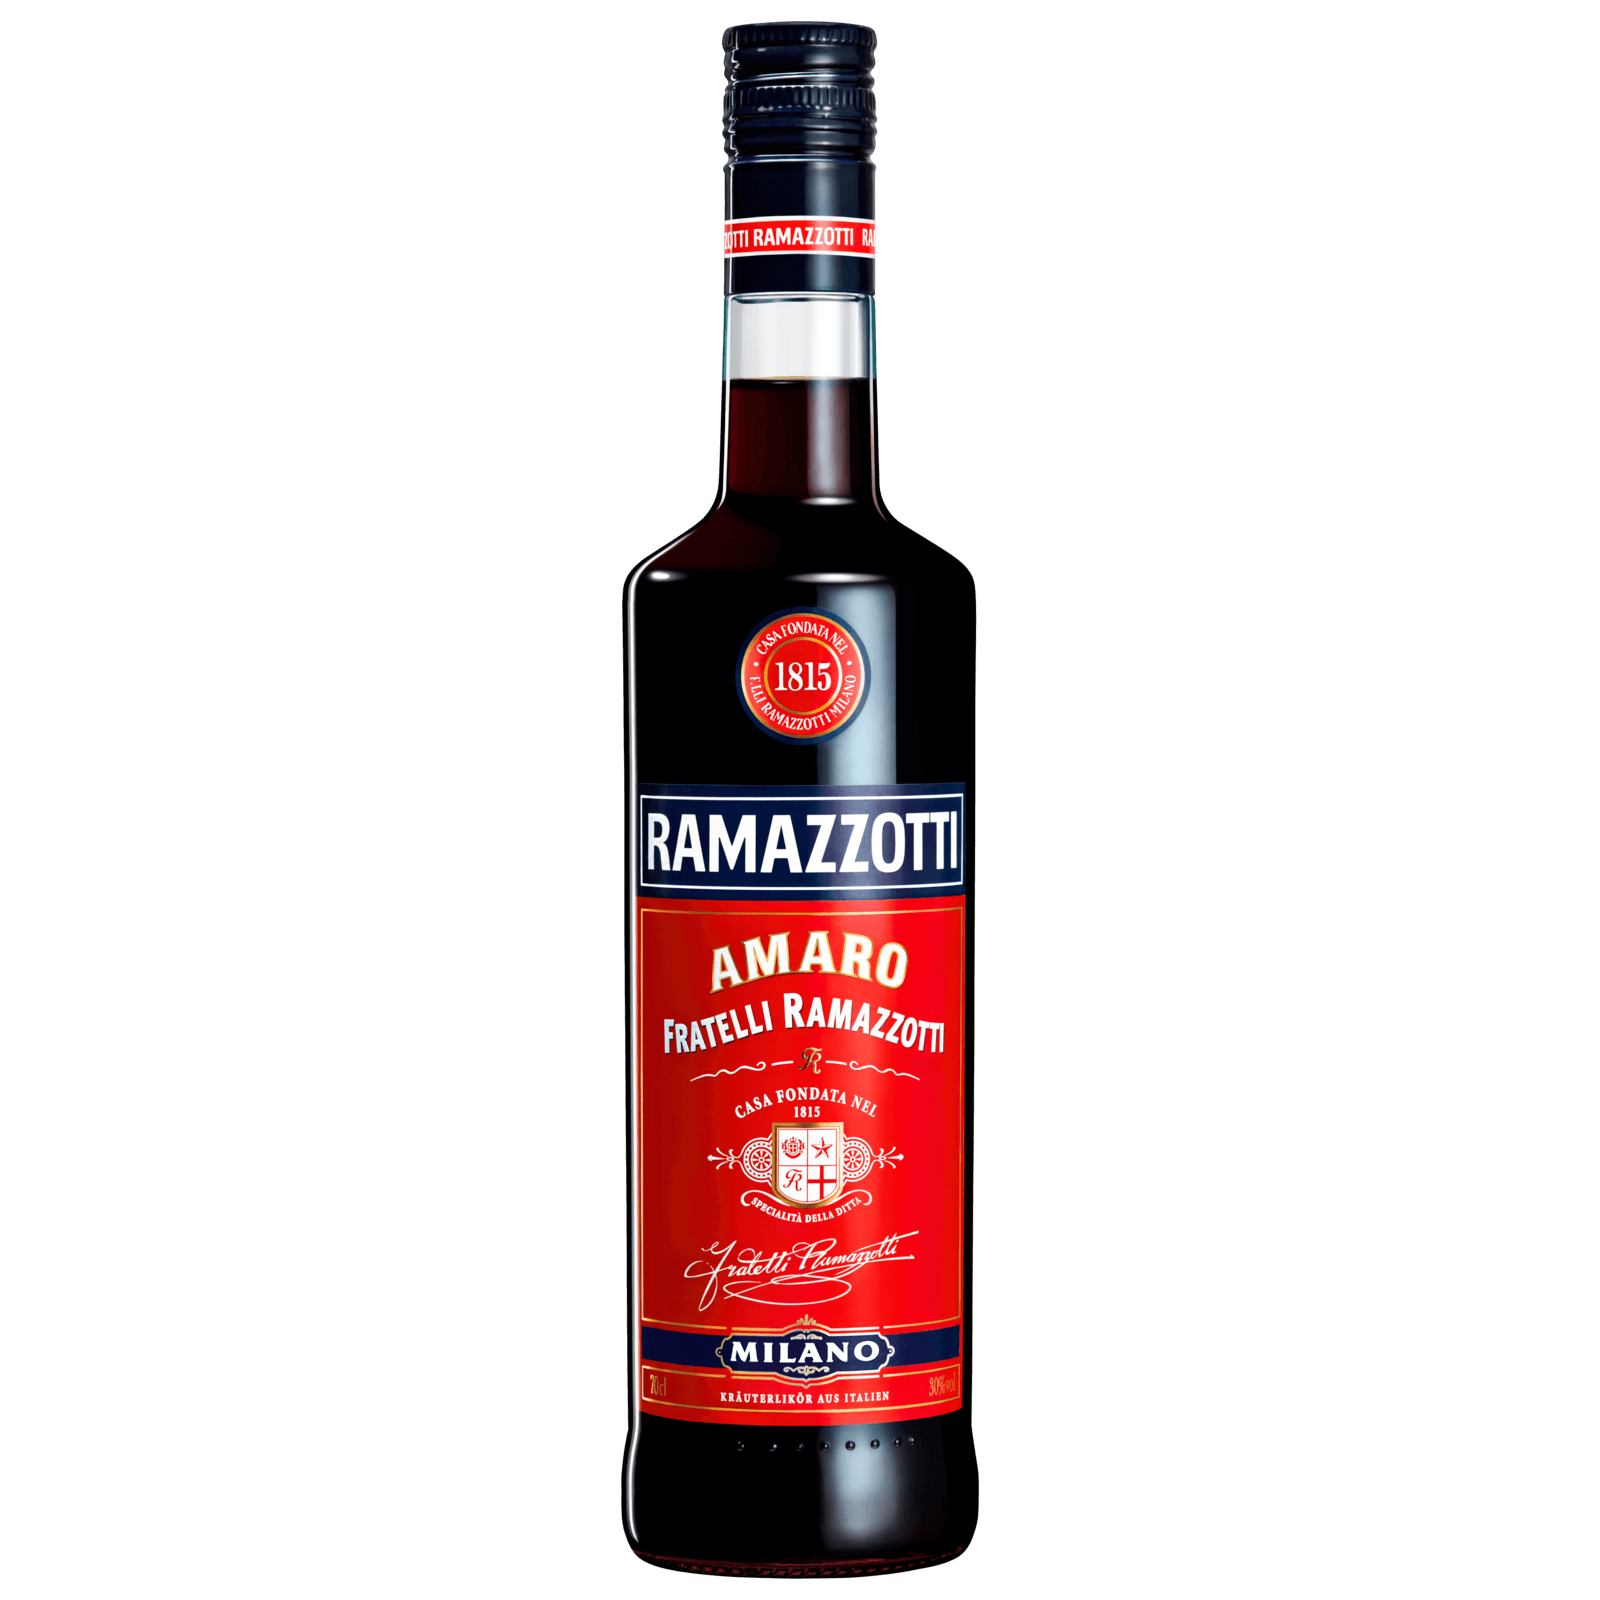 Ramazzotti Amaro 0,7l bei REWE online bestellen!